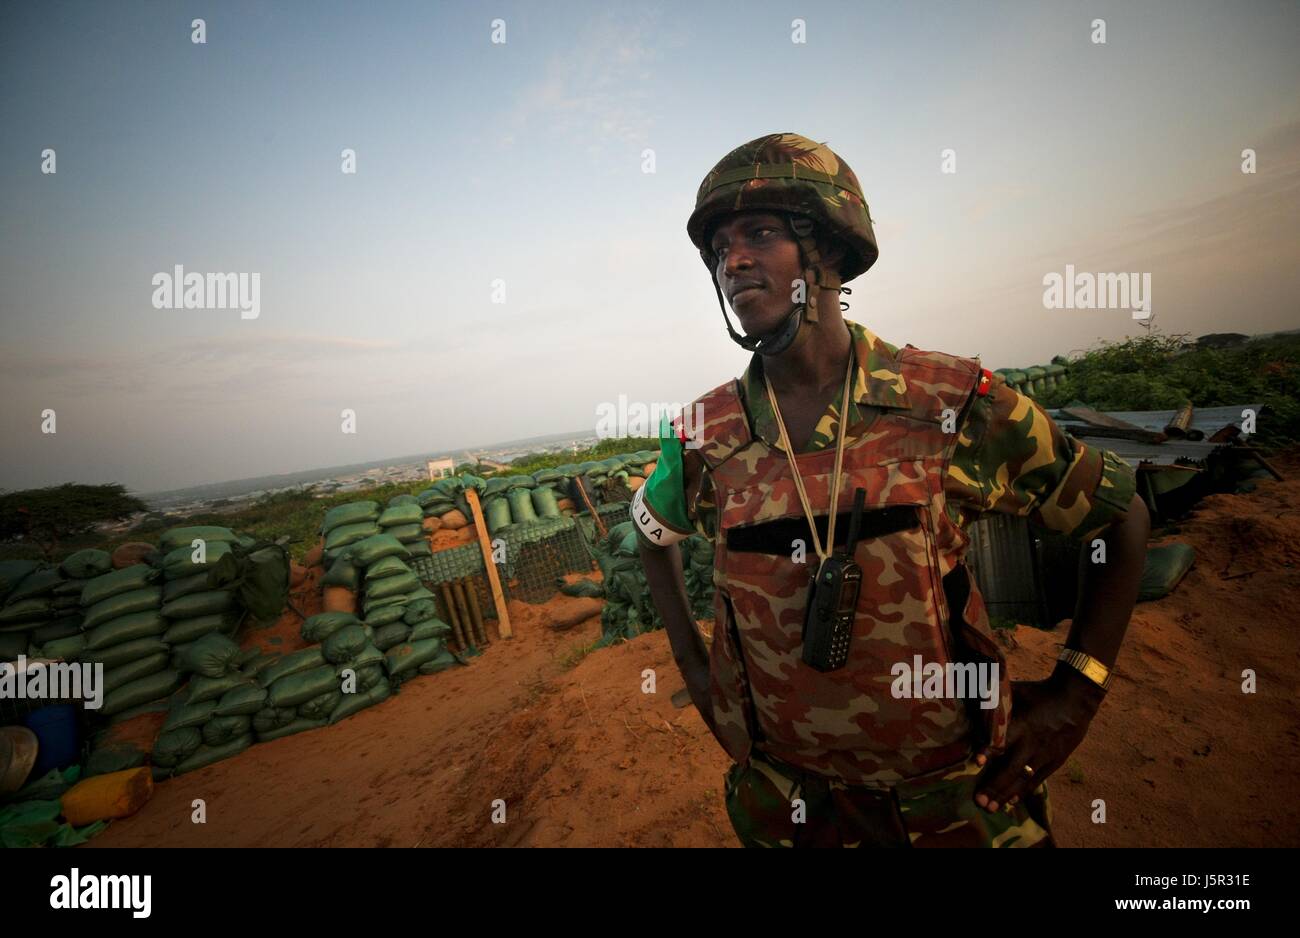 Mission de l'Union africaine en Somalie (AMISOM) des soldats burundais de l'homme en première ligne un territoire récemment capturés dans les insurgés dans le district de Deynile, le 18 novembre 2011 près de Mogadiscio, en Somalie. (Photo par Stuart Price/ANISOM par Planetpix) Banque D'Images